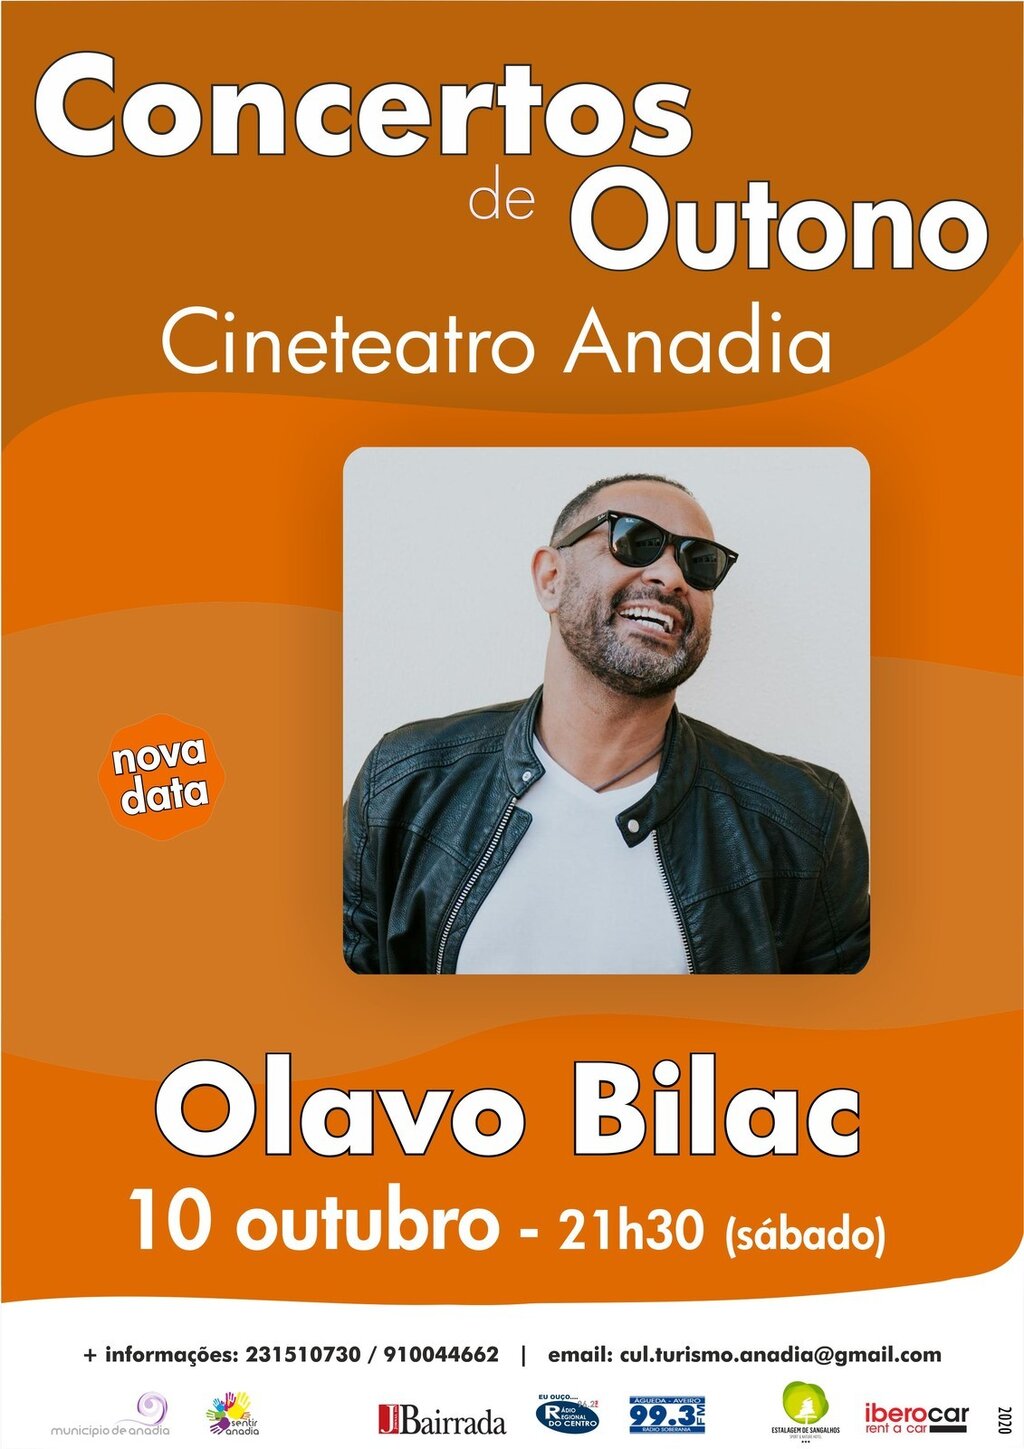 Olavo Bilac - Concertos de Outono